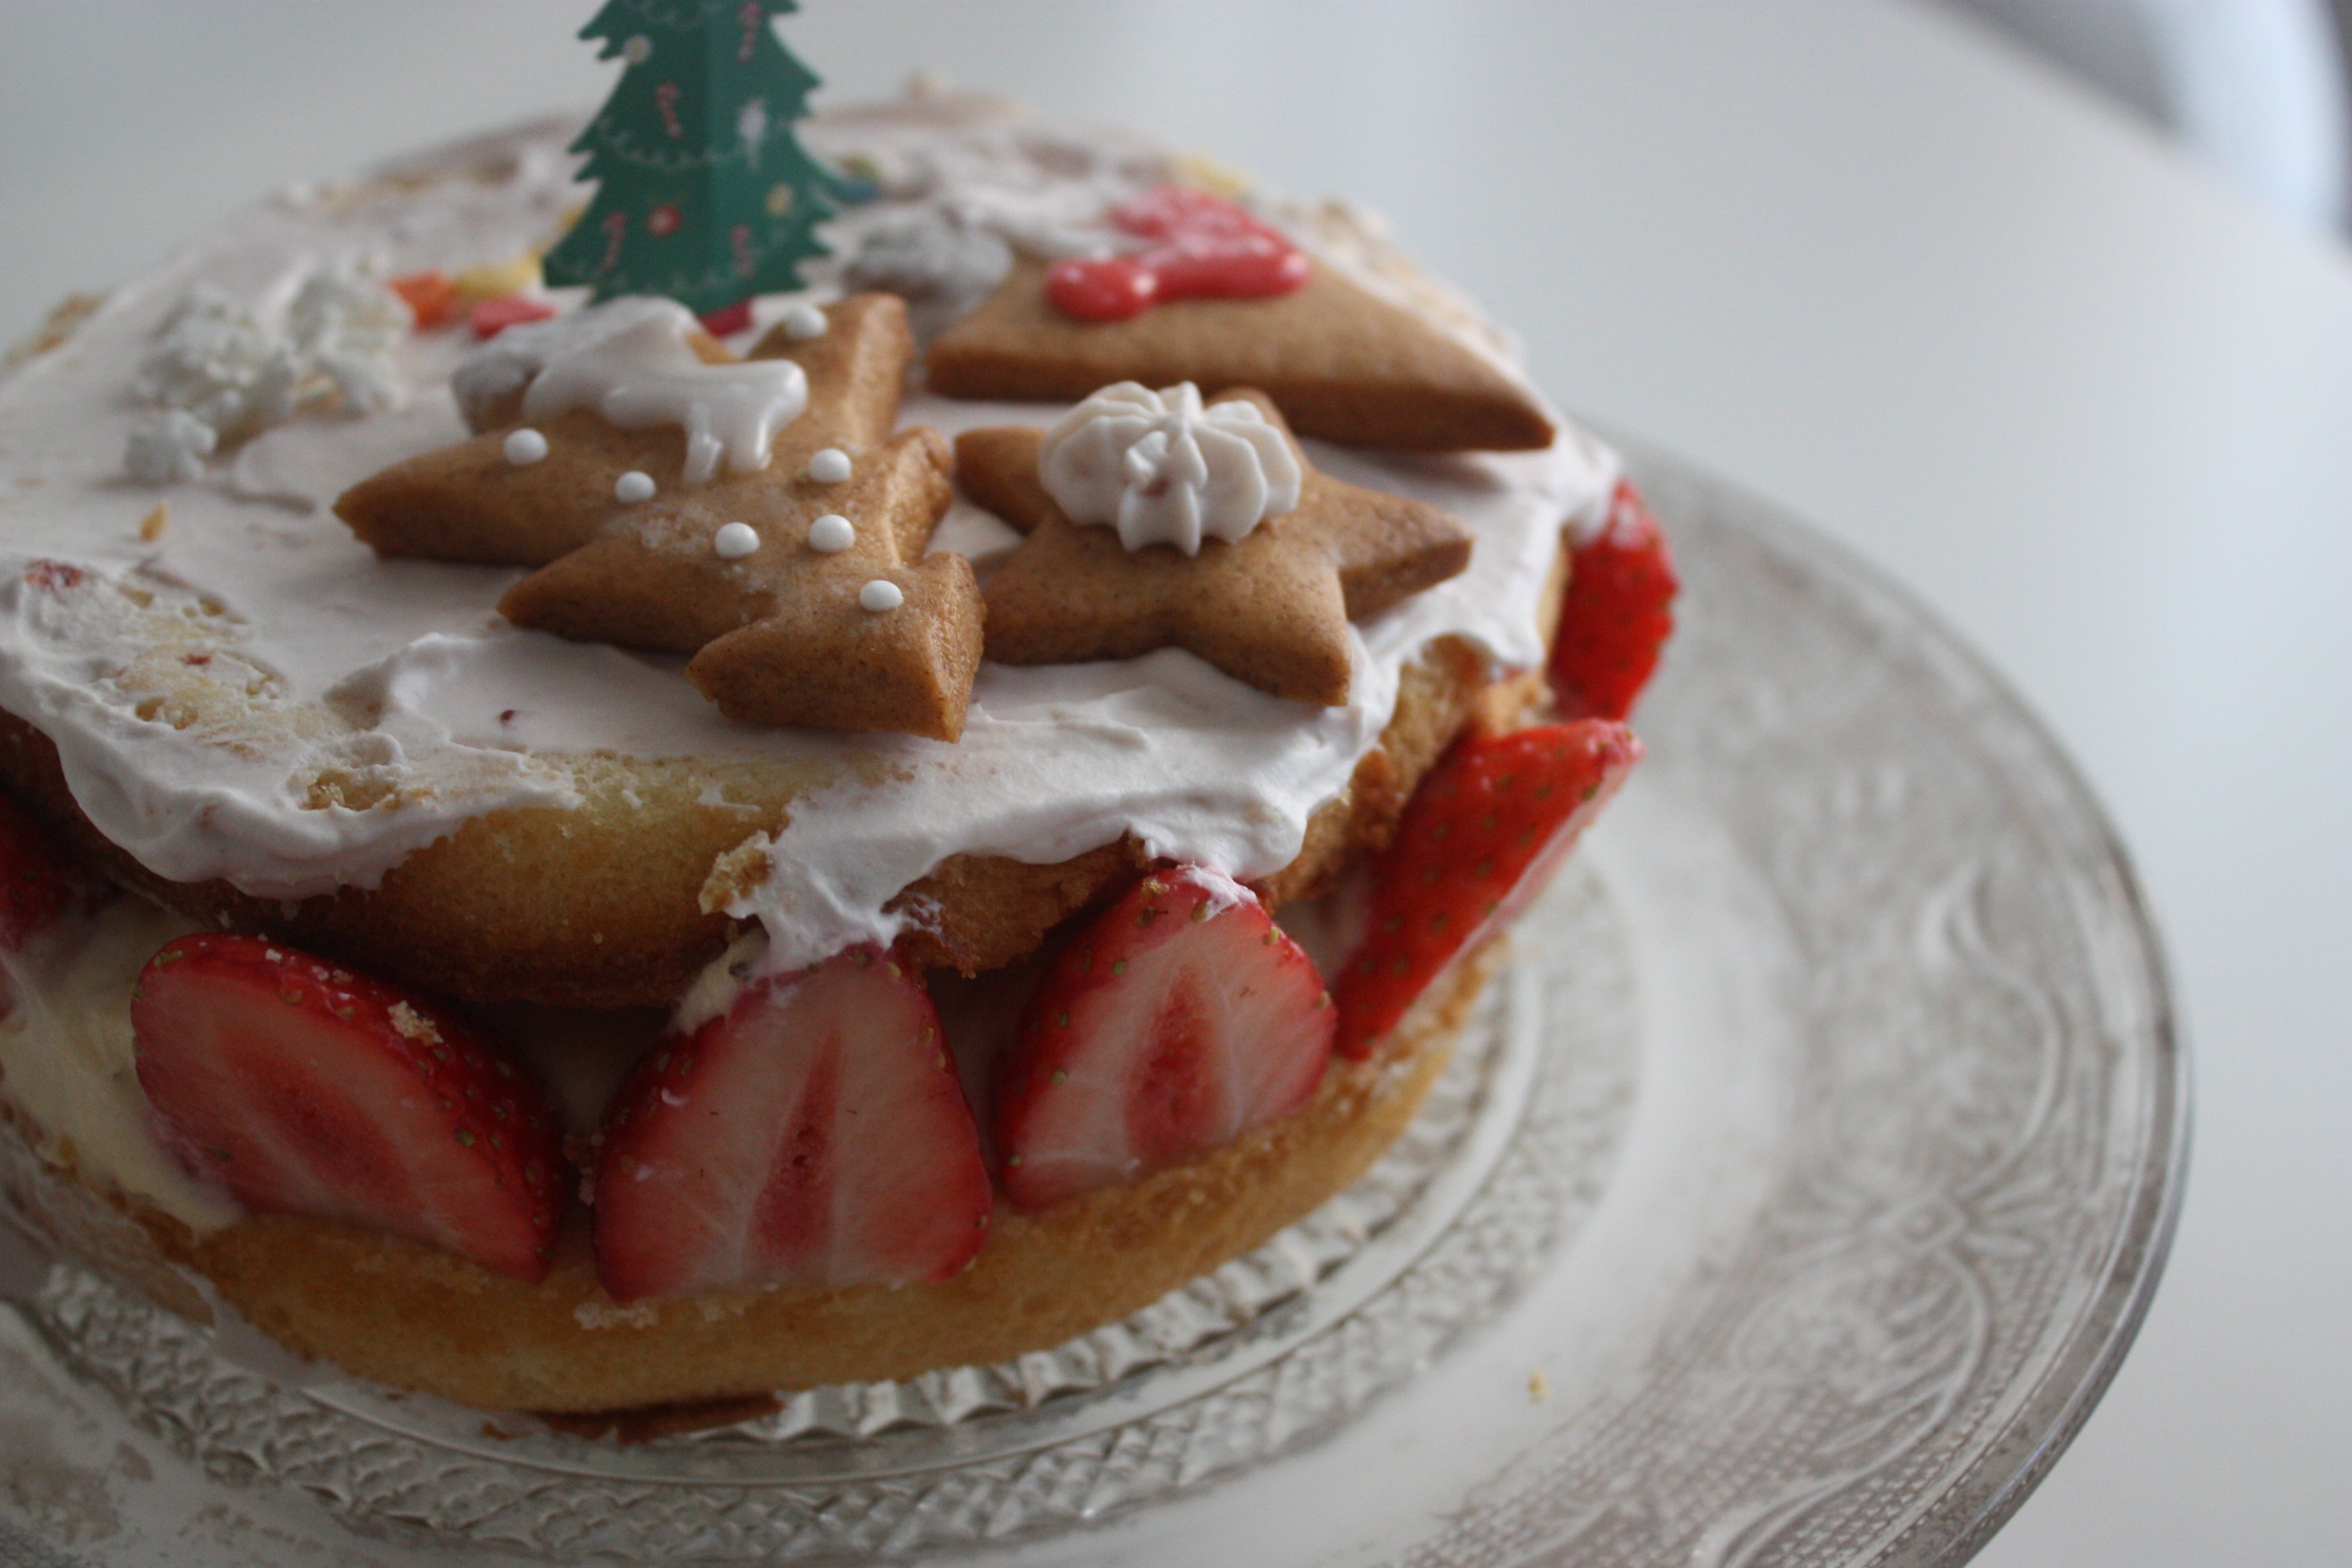 夢を形に アイデアいっぱいのクリスマスケーキ パリ風 ママスタイル Blog Madame Figaro Jp フィガロジャポン